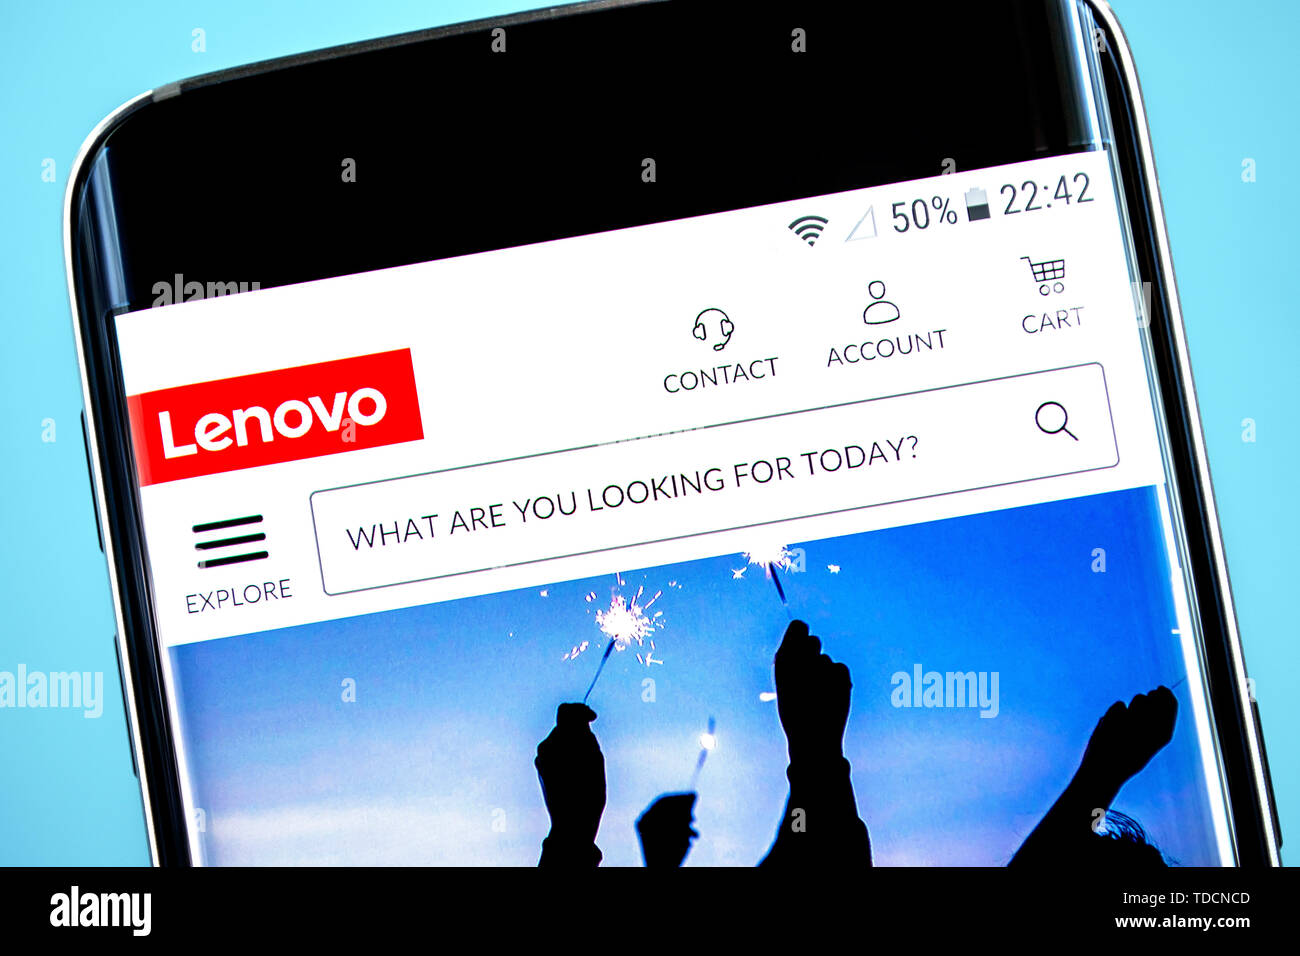 Berdyansk, Ukraine - 10 June 2019: Lenovo Group website homepage. Lenovo Group logo visible on the phone screen, Illustrative Editorial. Stock Photo